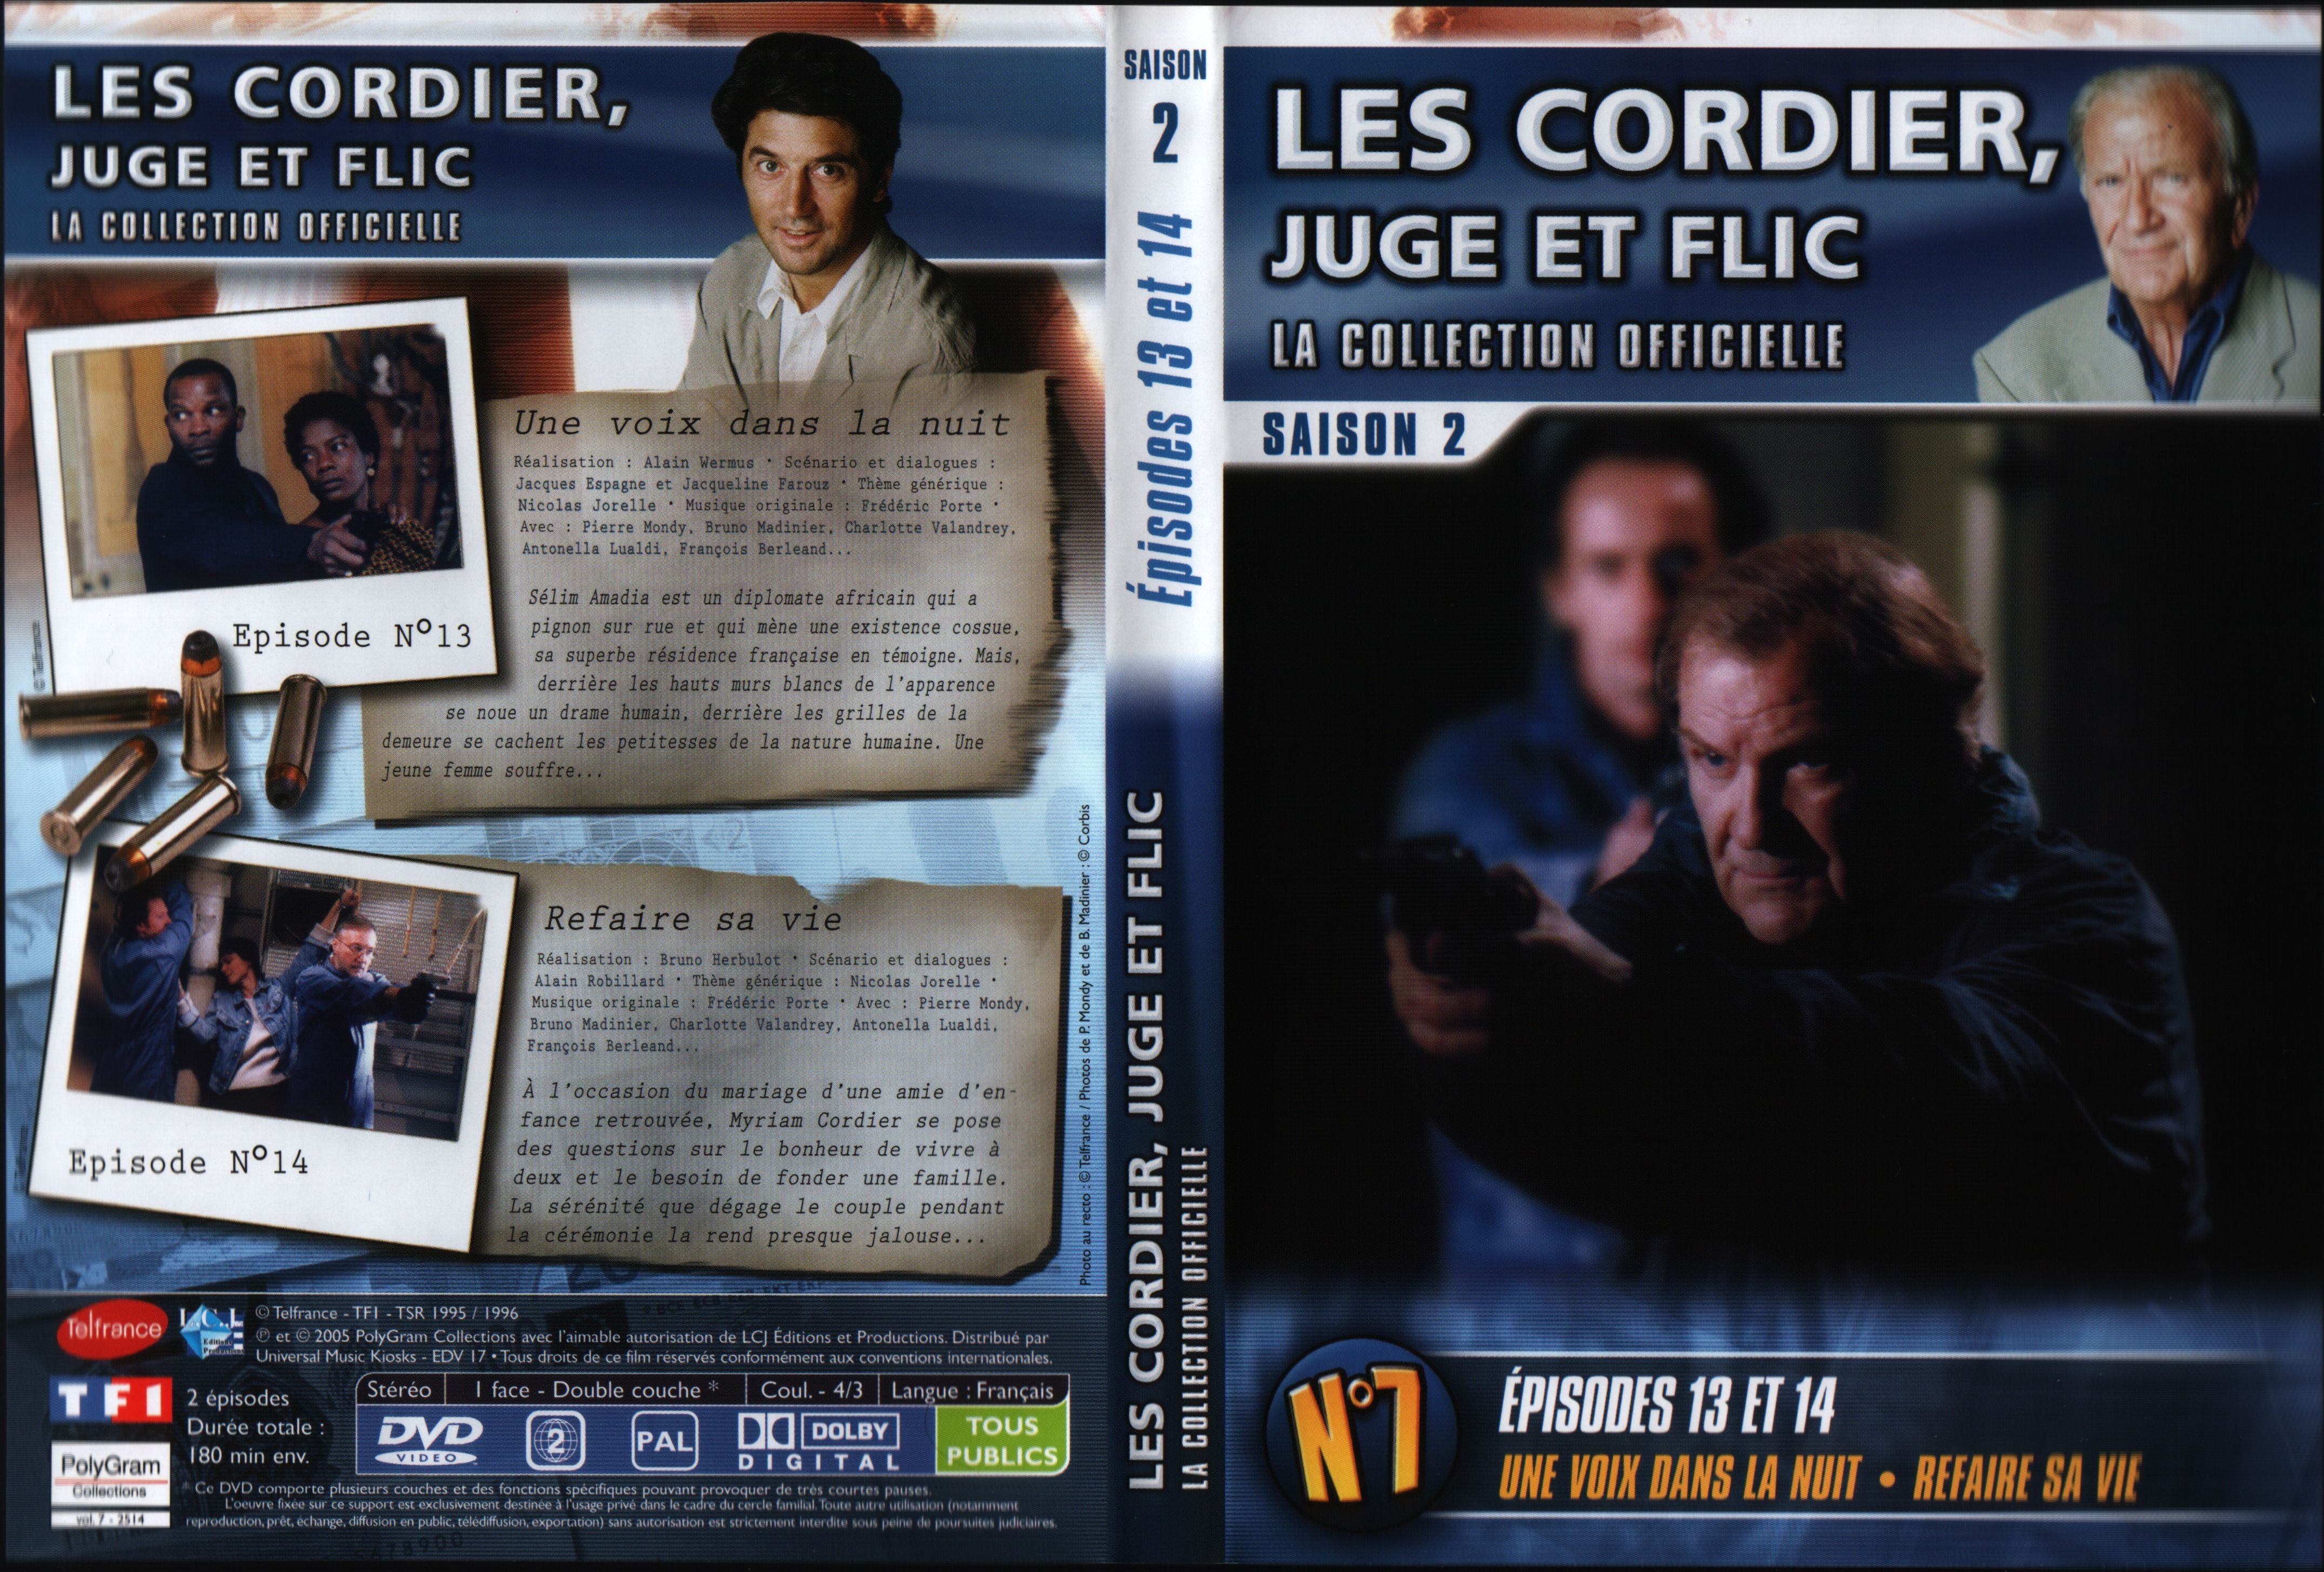 Jaquette DVD Les cordier juge et flic Saison 2 vol 7